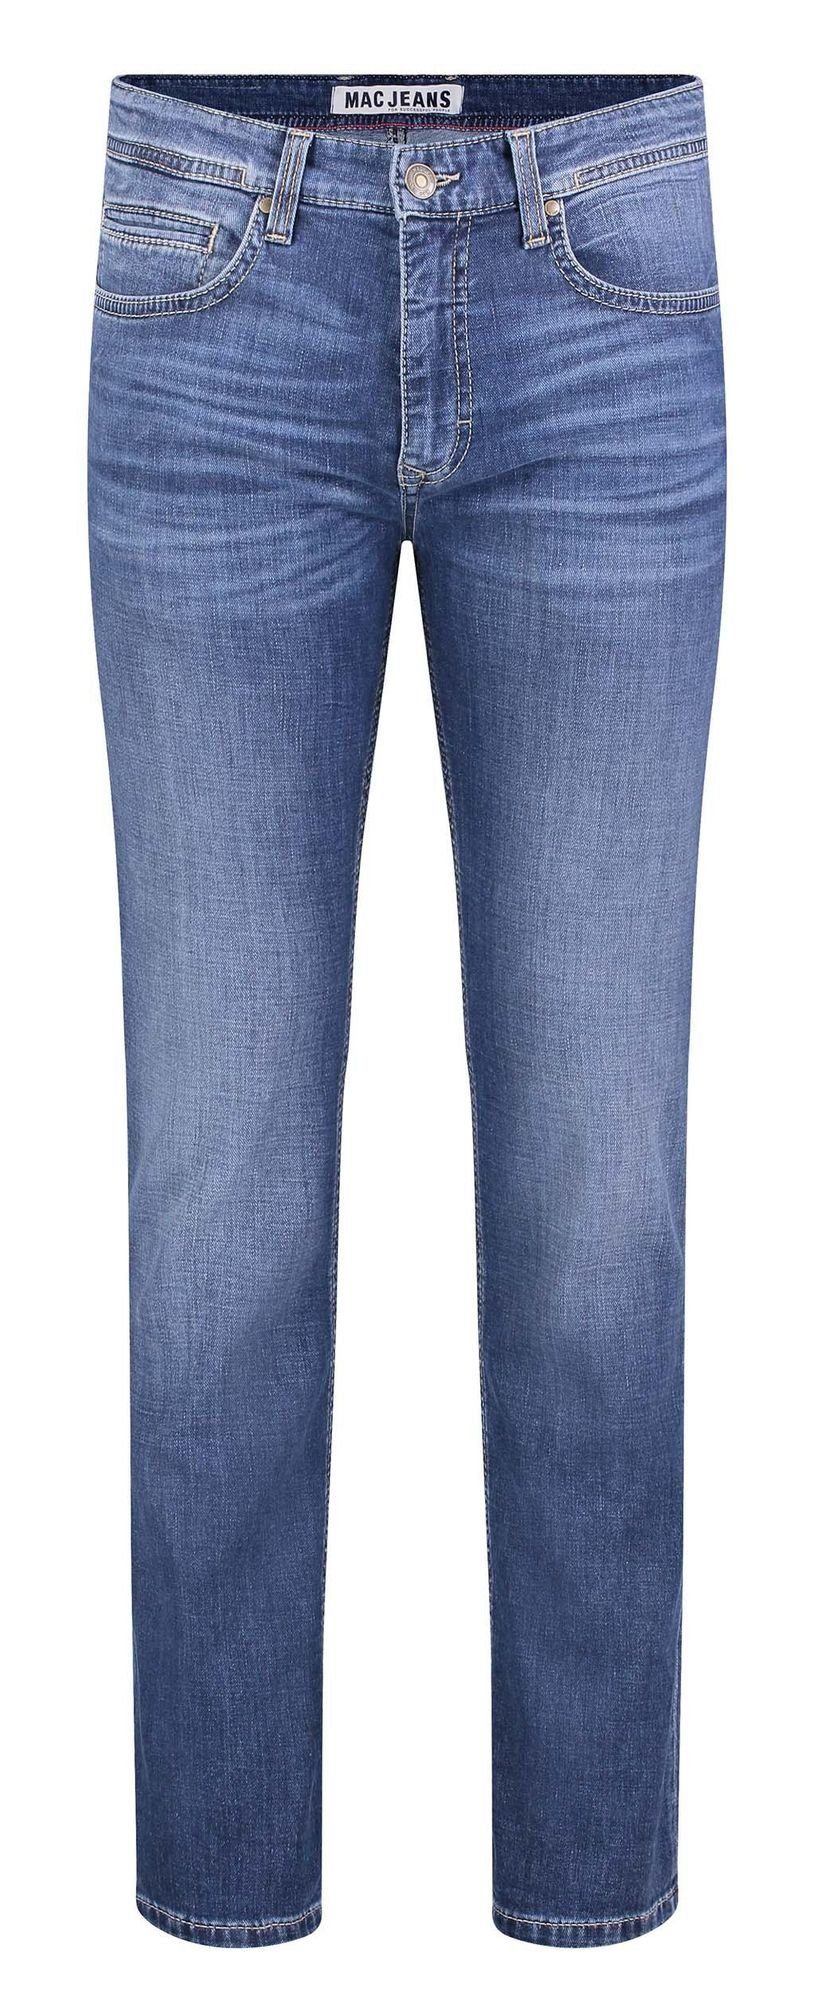 MAC 5-Pocket-Jeans 0500-00-0970L H690 - dark blue authentic 3D wash